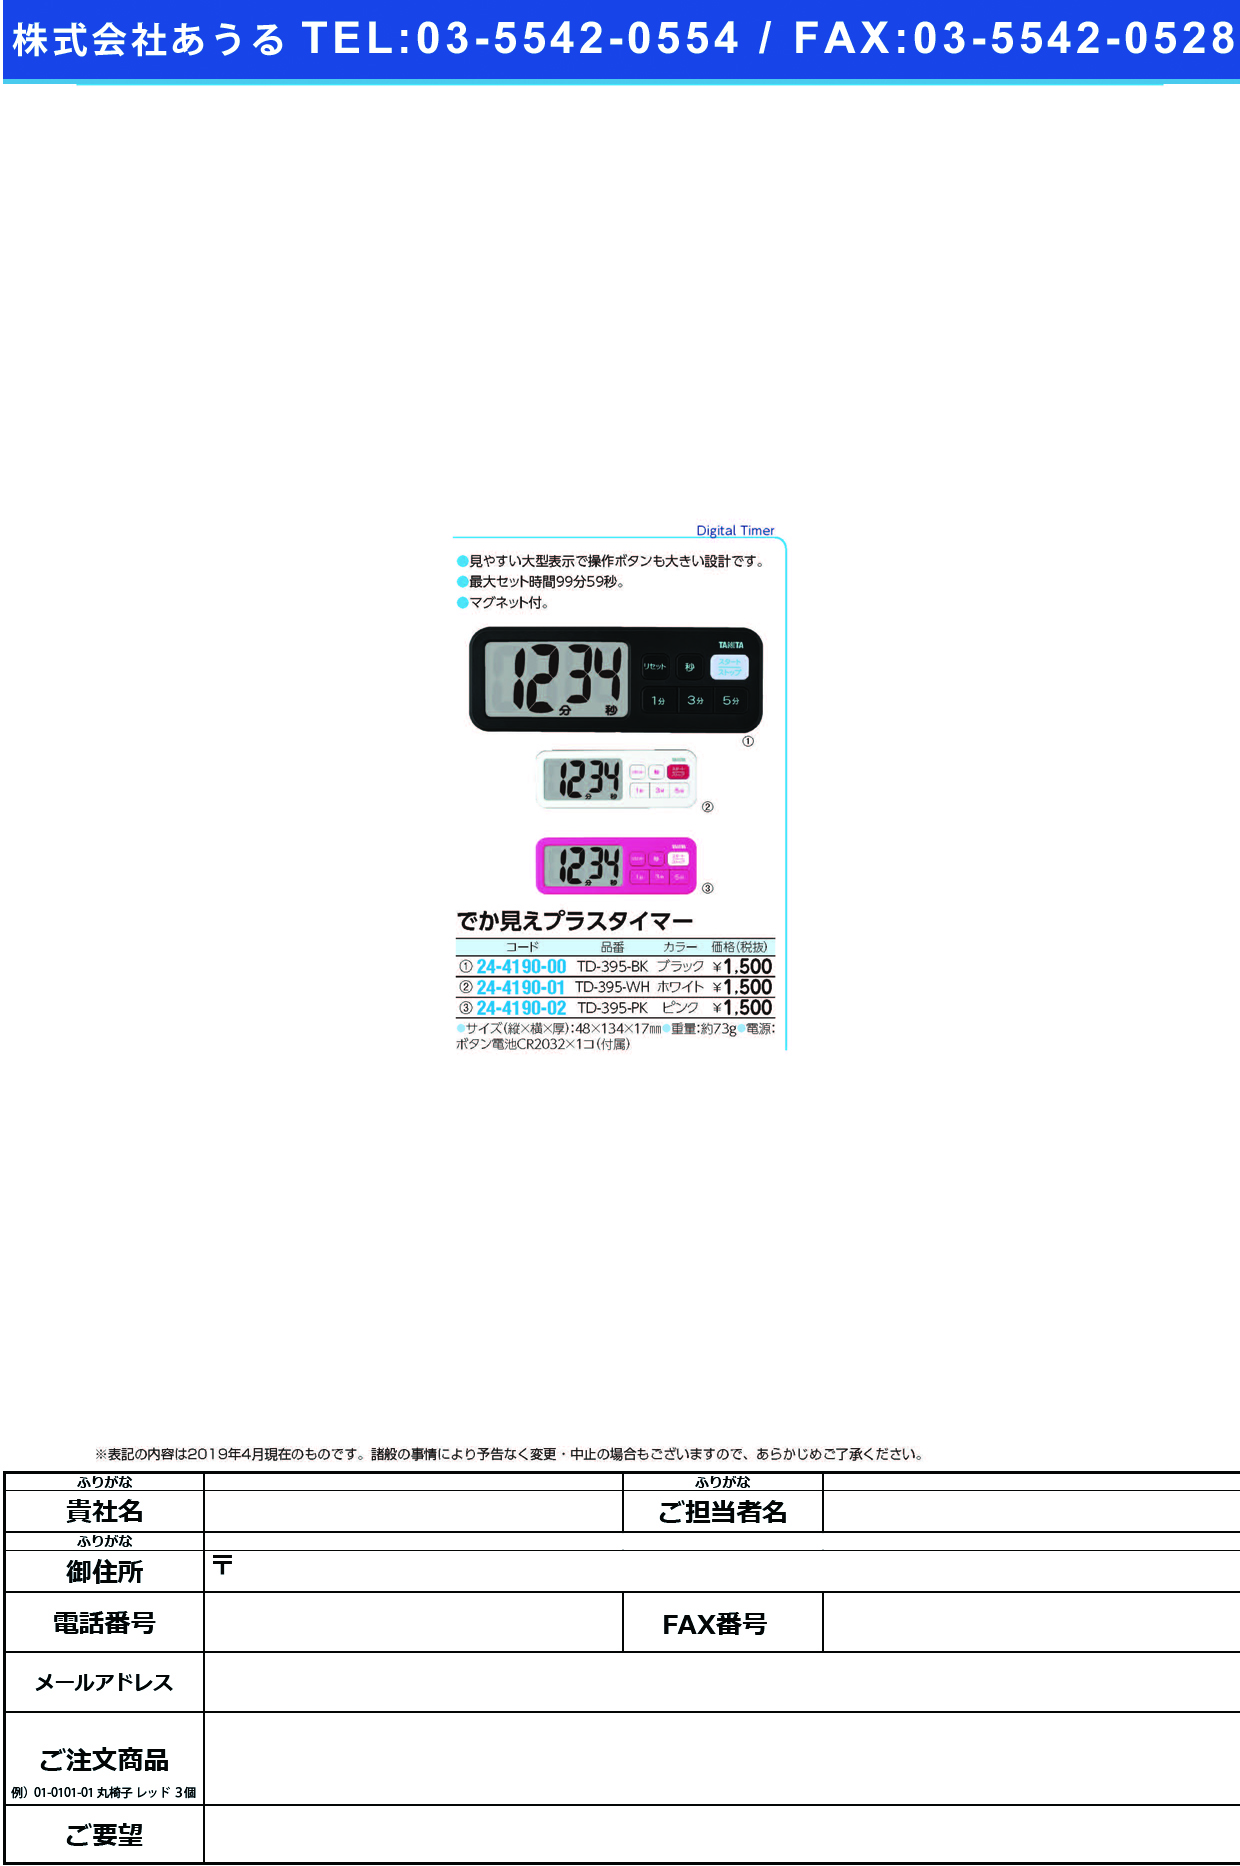 (24-4190-00)デジタルタイマーでか見えプラス TD-395(ﾌﾞﾗｯｸ) ﾃﾞｼﾞﾀﾙﾀｲﾏｰﾃﾞｶﾐｴﾌﾟﾗｽ(タニタ)【1個単位】【2019年カタログ商品】